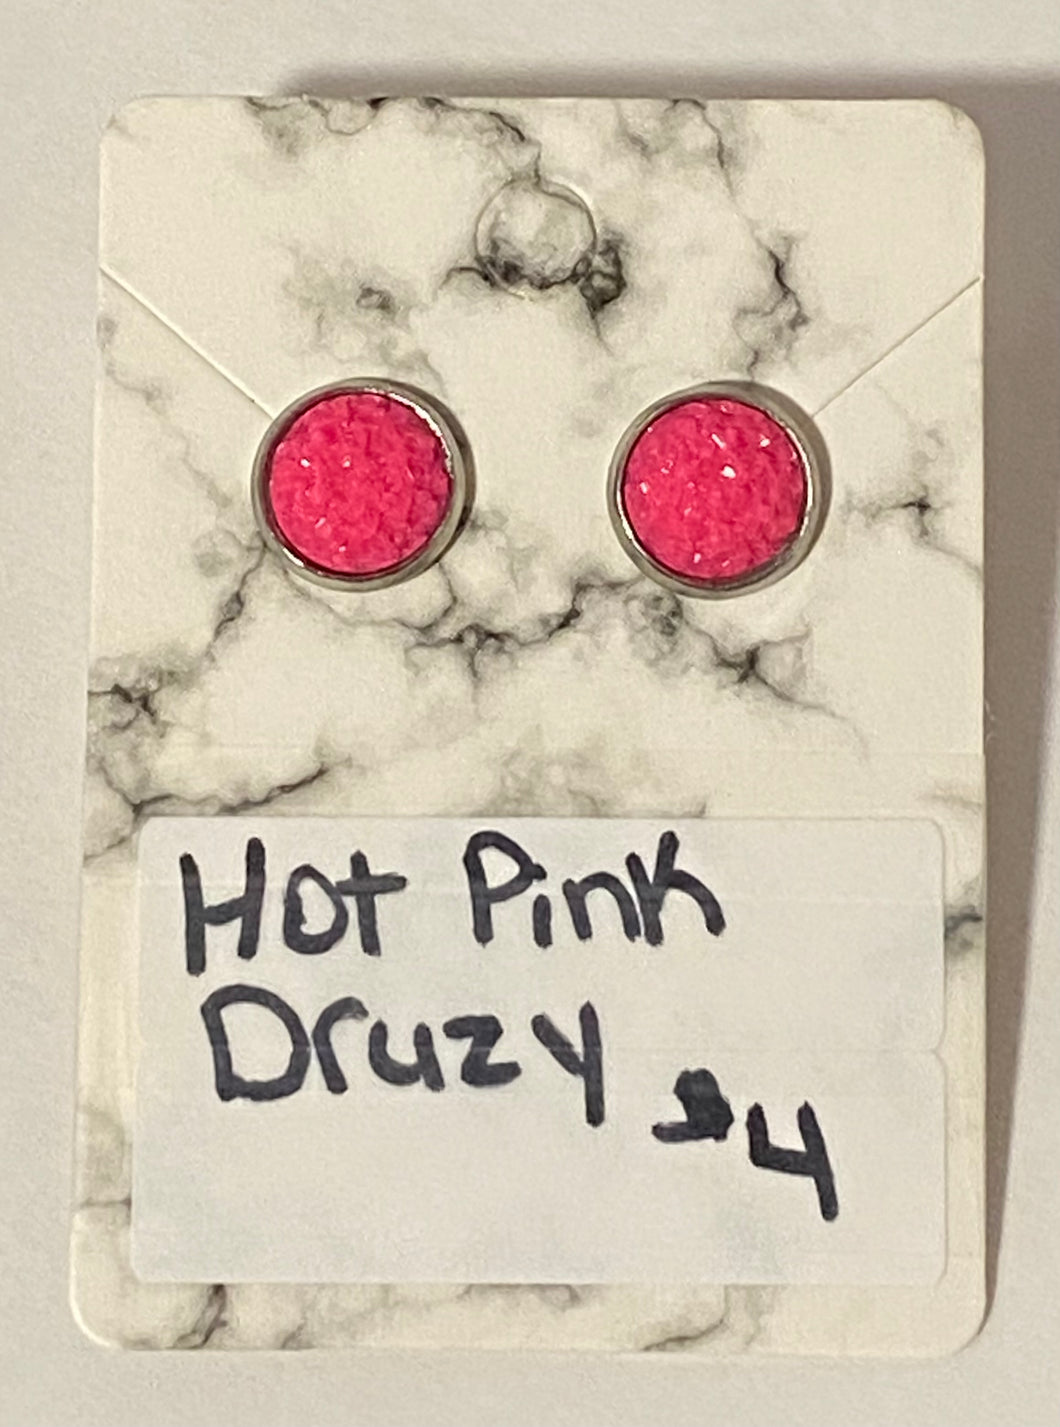 Hot Pink Druzy earrings